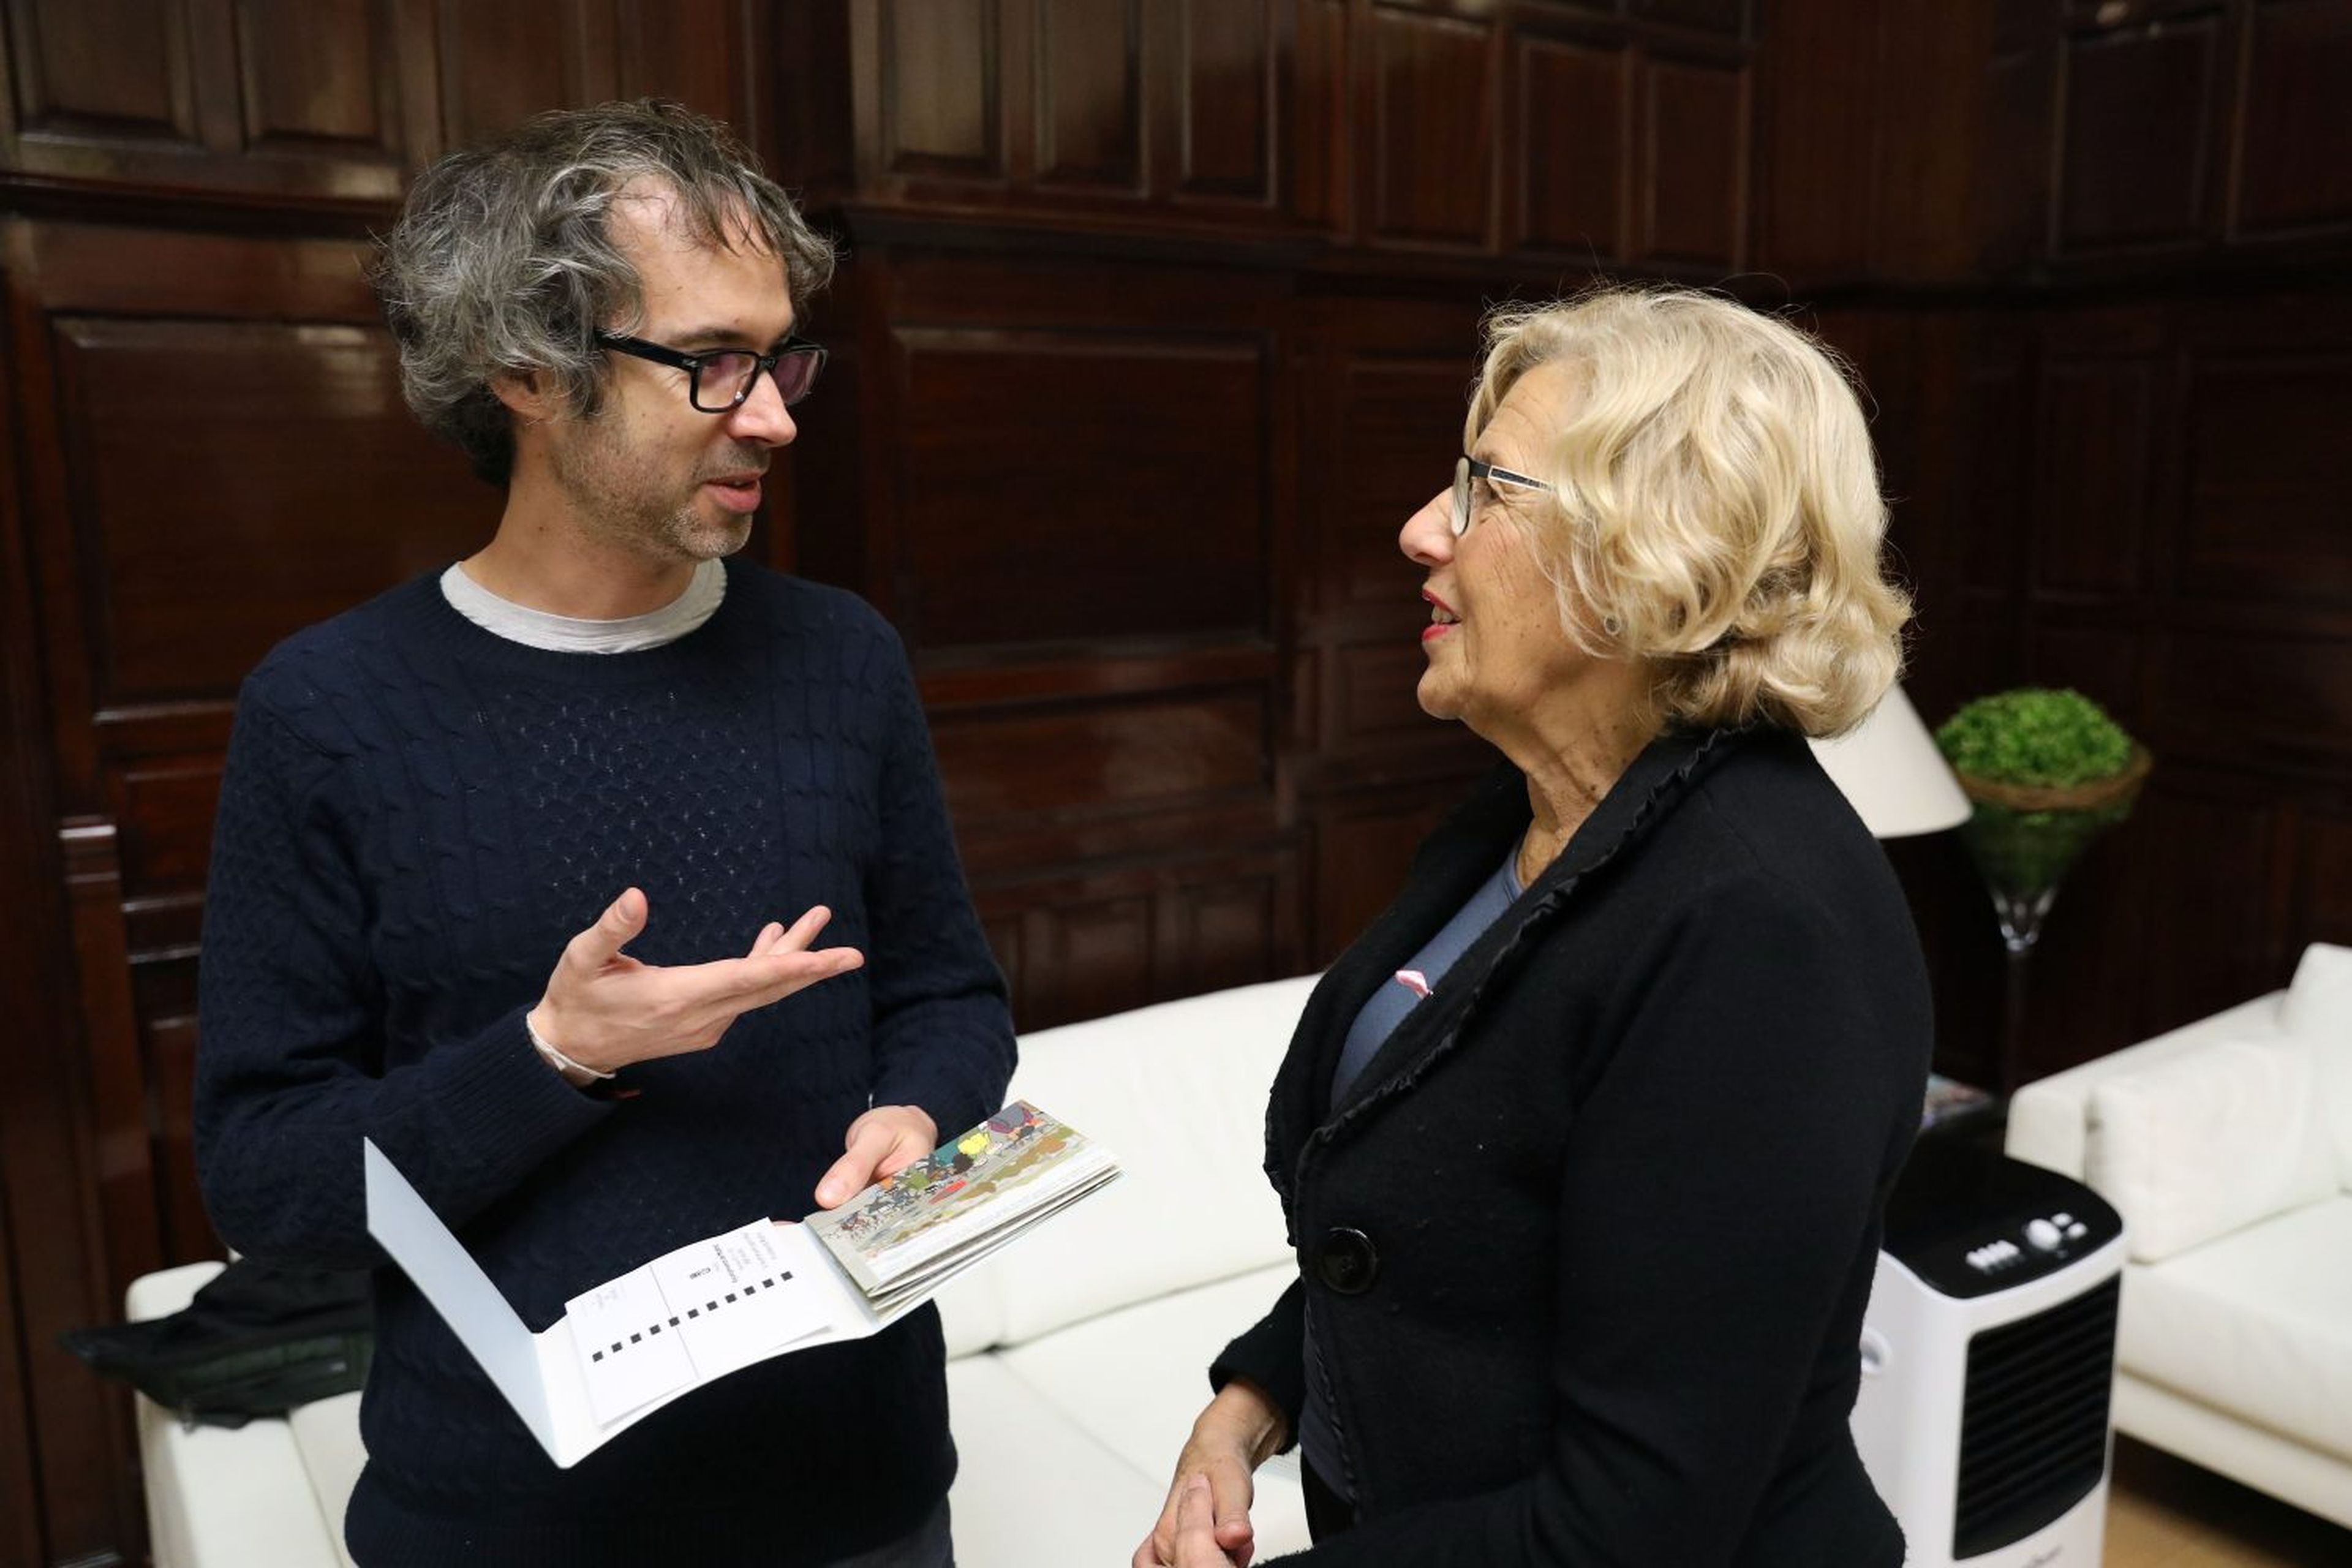 El pianista británico James Rhodes, afincado en España, charla con Manuela Carmena, alcaldesa de Madrid entre 2015 y 2019.